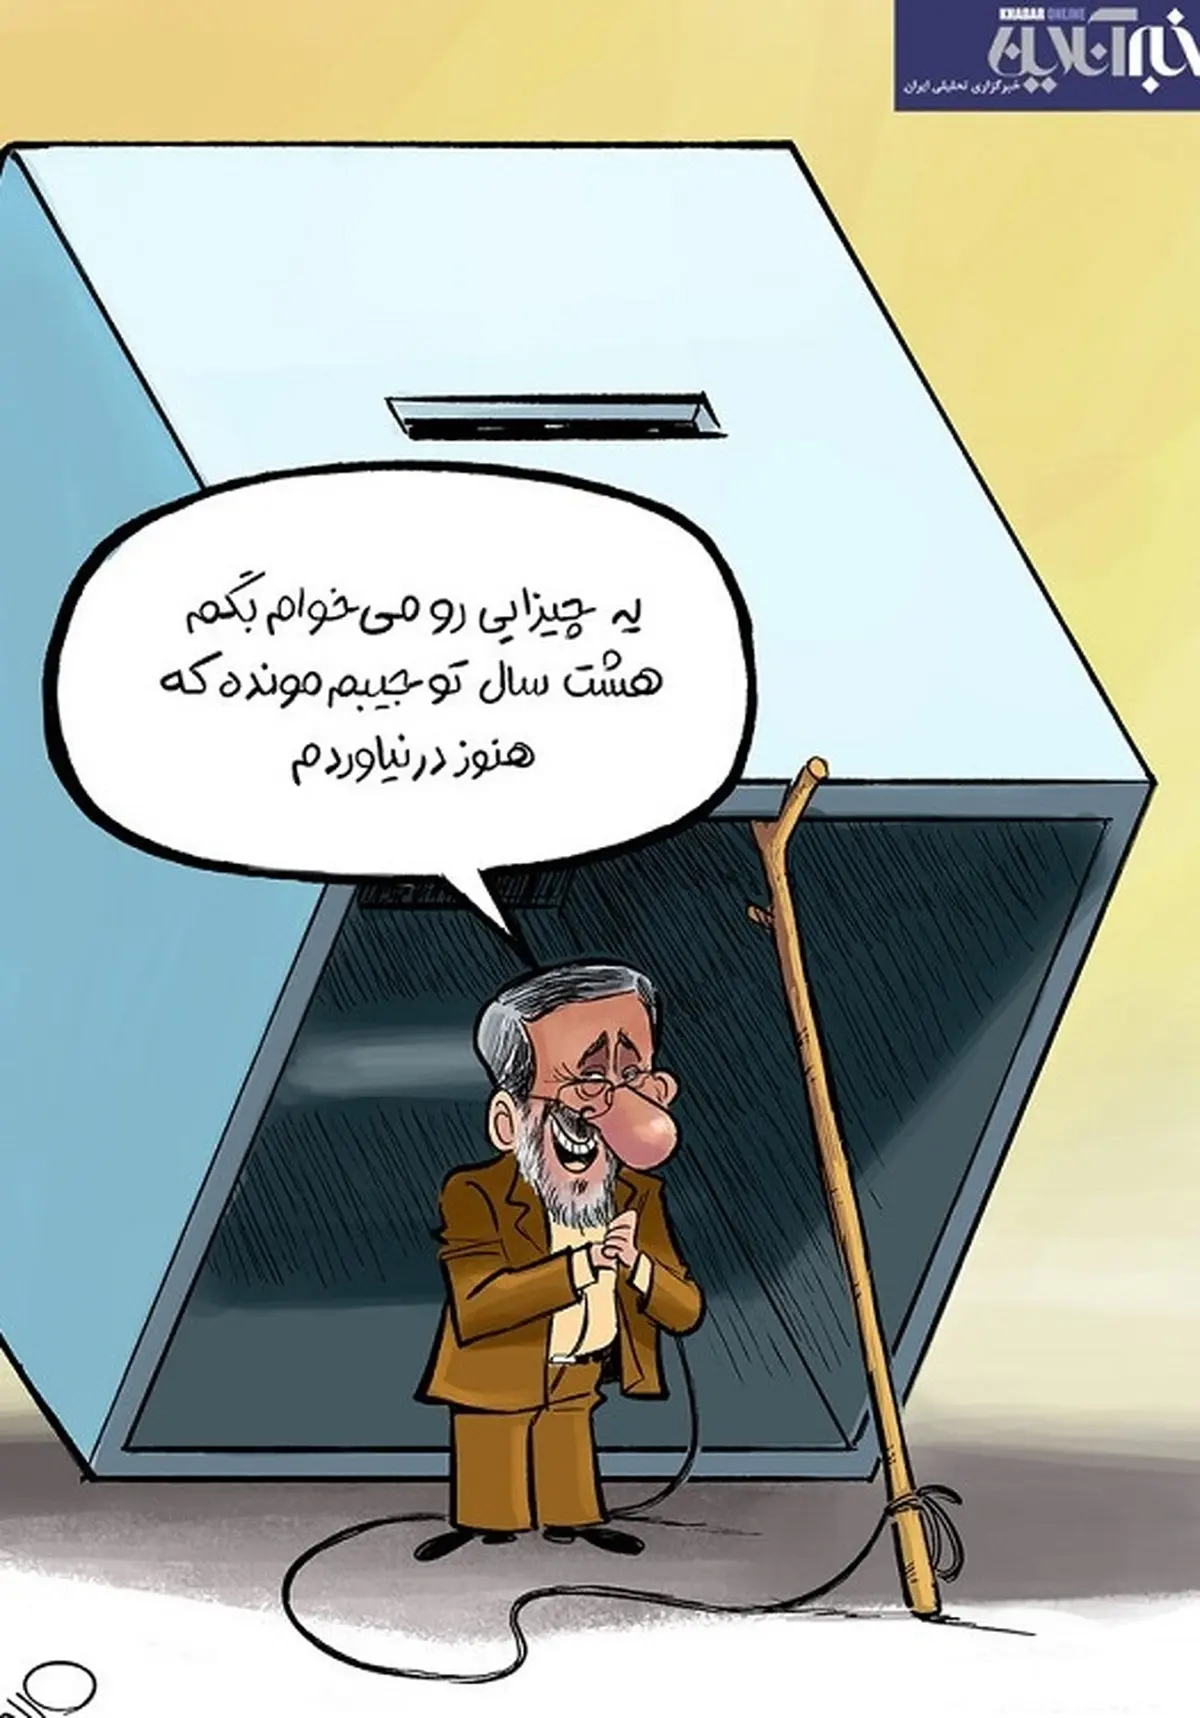 کاریکاتور| معجزه احمدی نژاد چیست؟ | کاریکاتوری درباره معجزه جدید احمدی نژاد برای انتخابات  1400